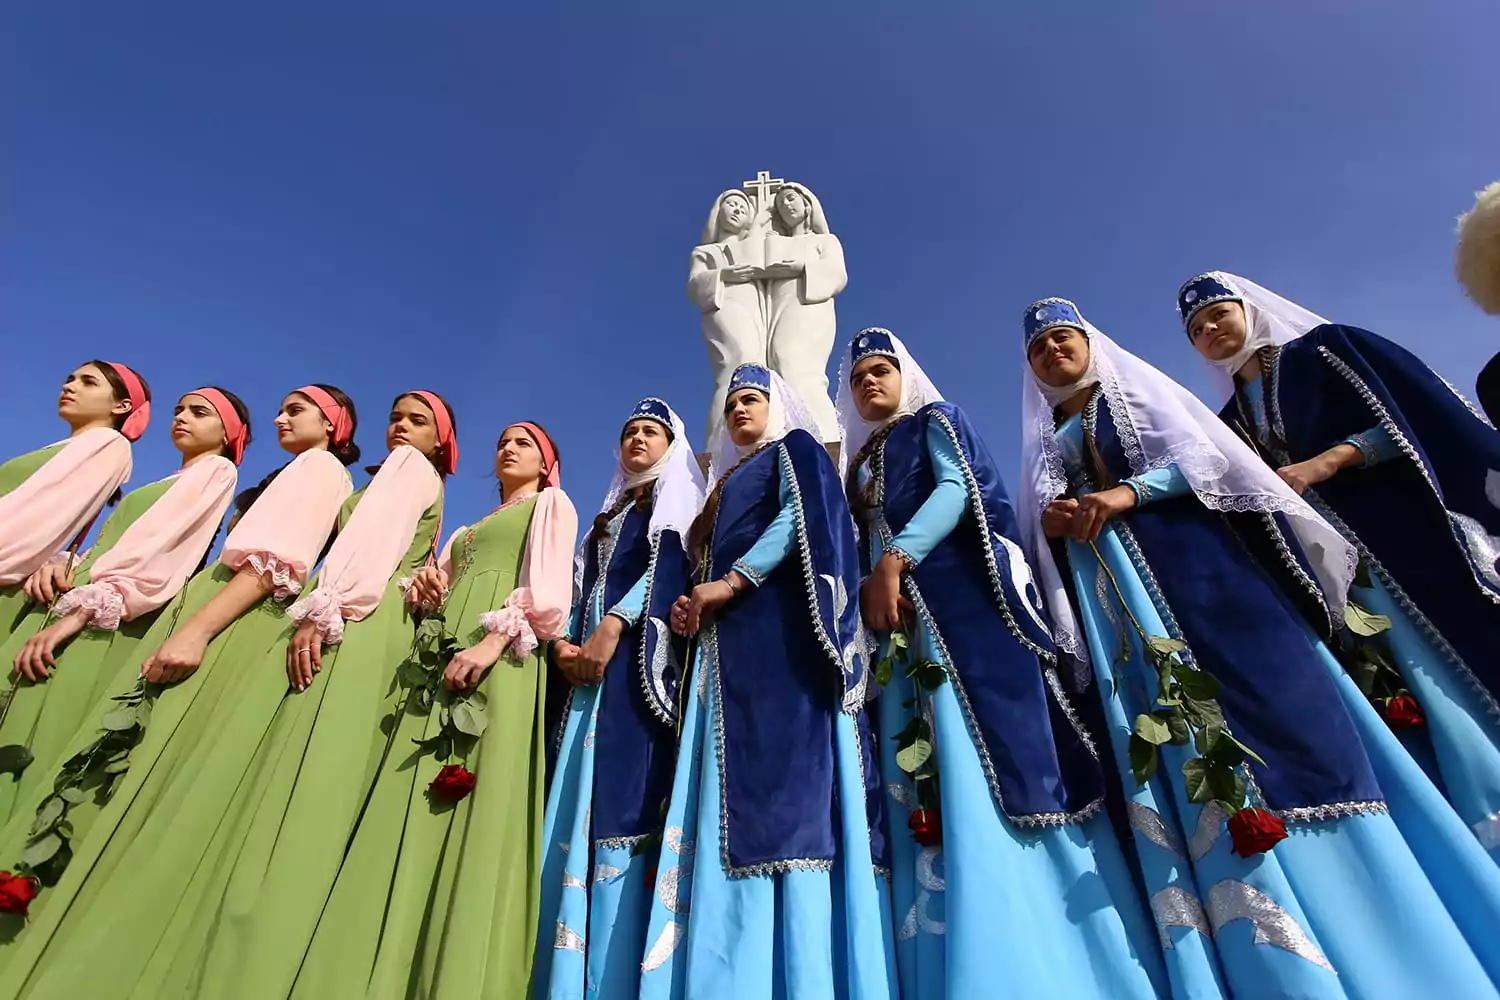 В День народного единства к памятнику «Единство духа», посвященного дружбе русского и армянского народов, возложили цветы